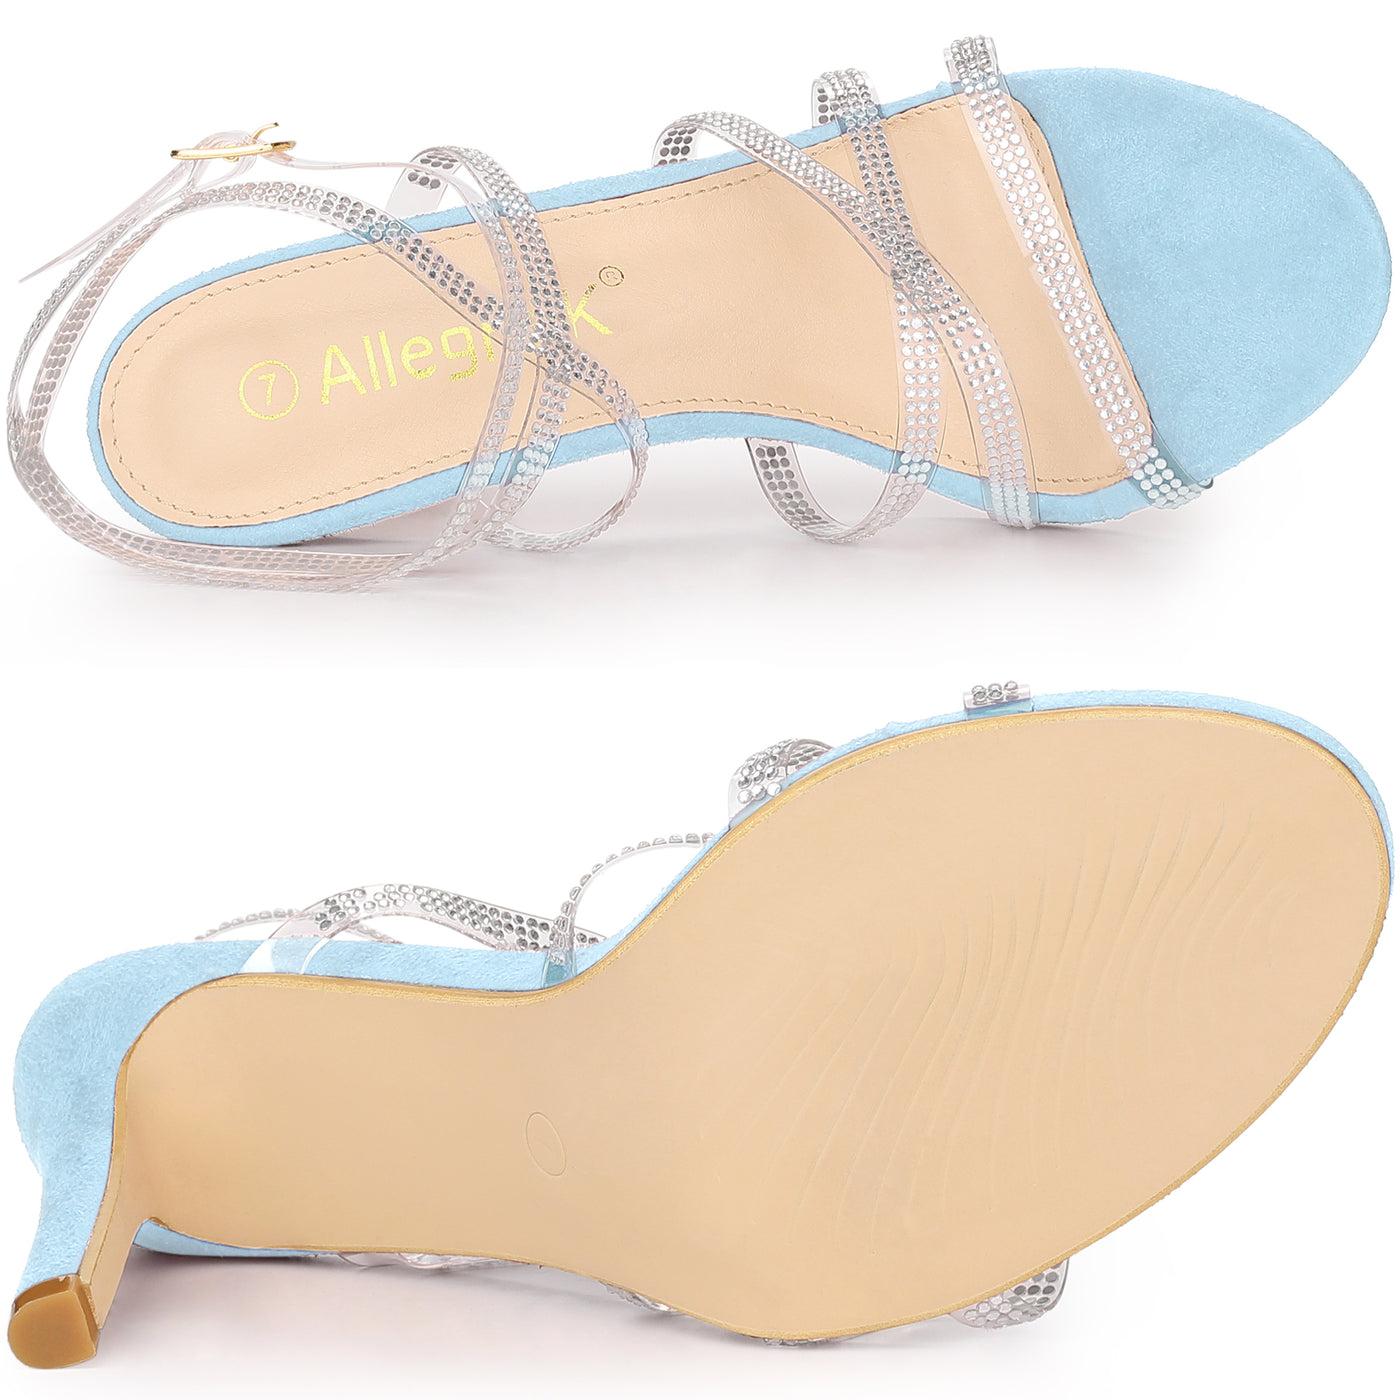 Allegra K Women's Rhinestone Strappy Ankle Strap Stiletto Heels Sandals